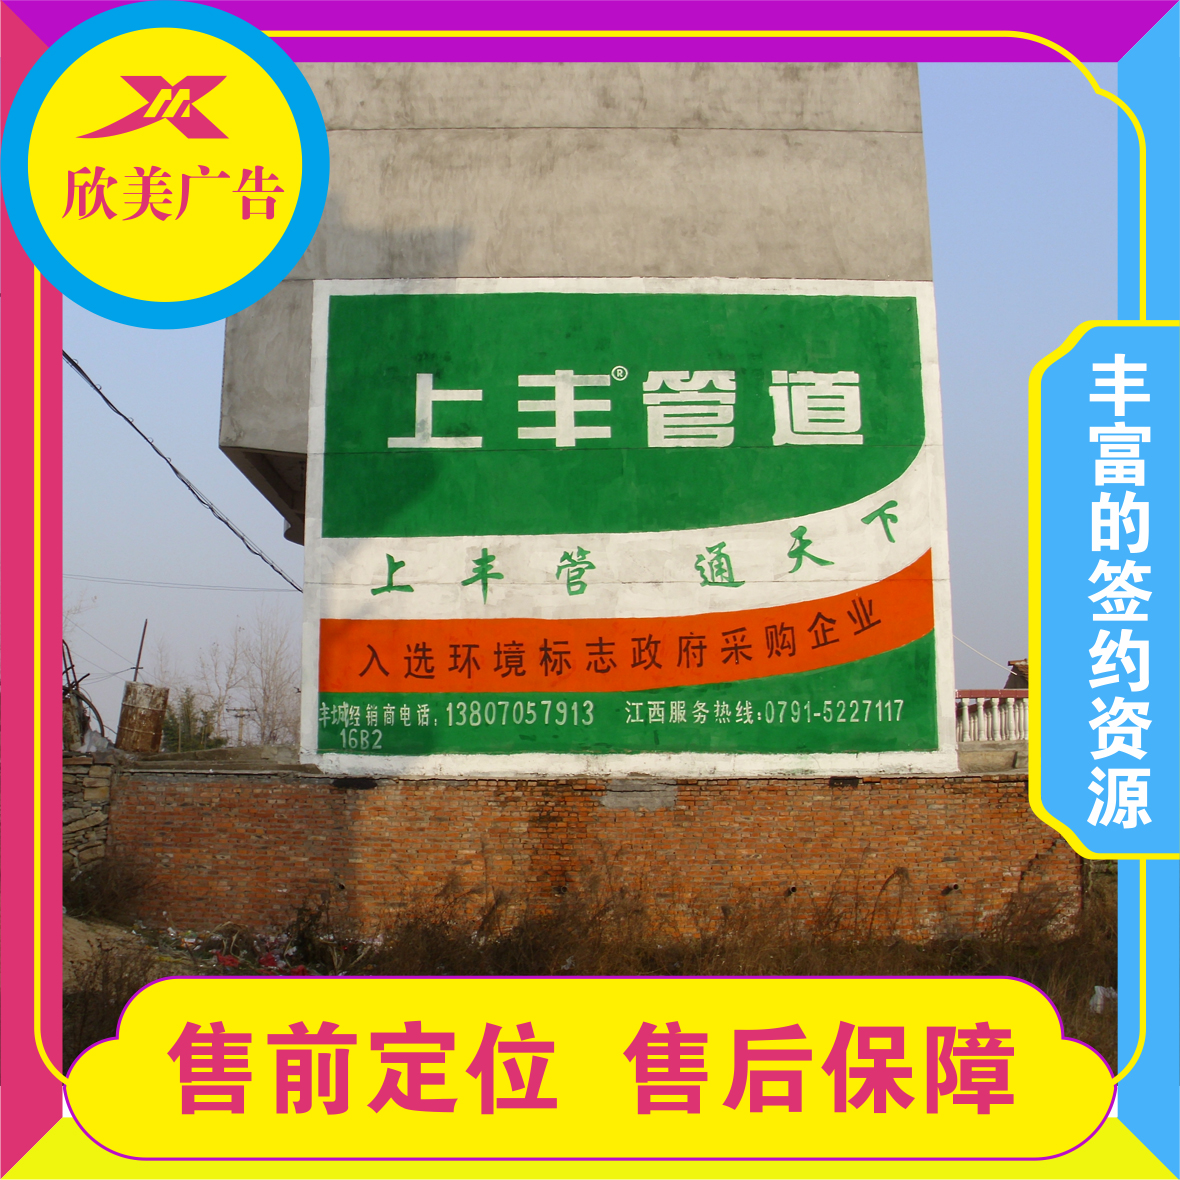 重庆万州新田墙面刷字广告白羊街道彩绘